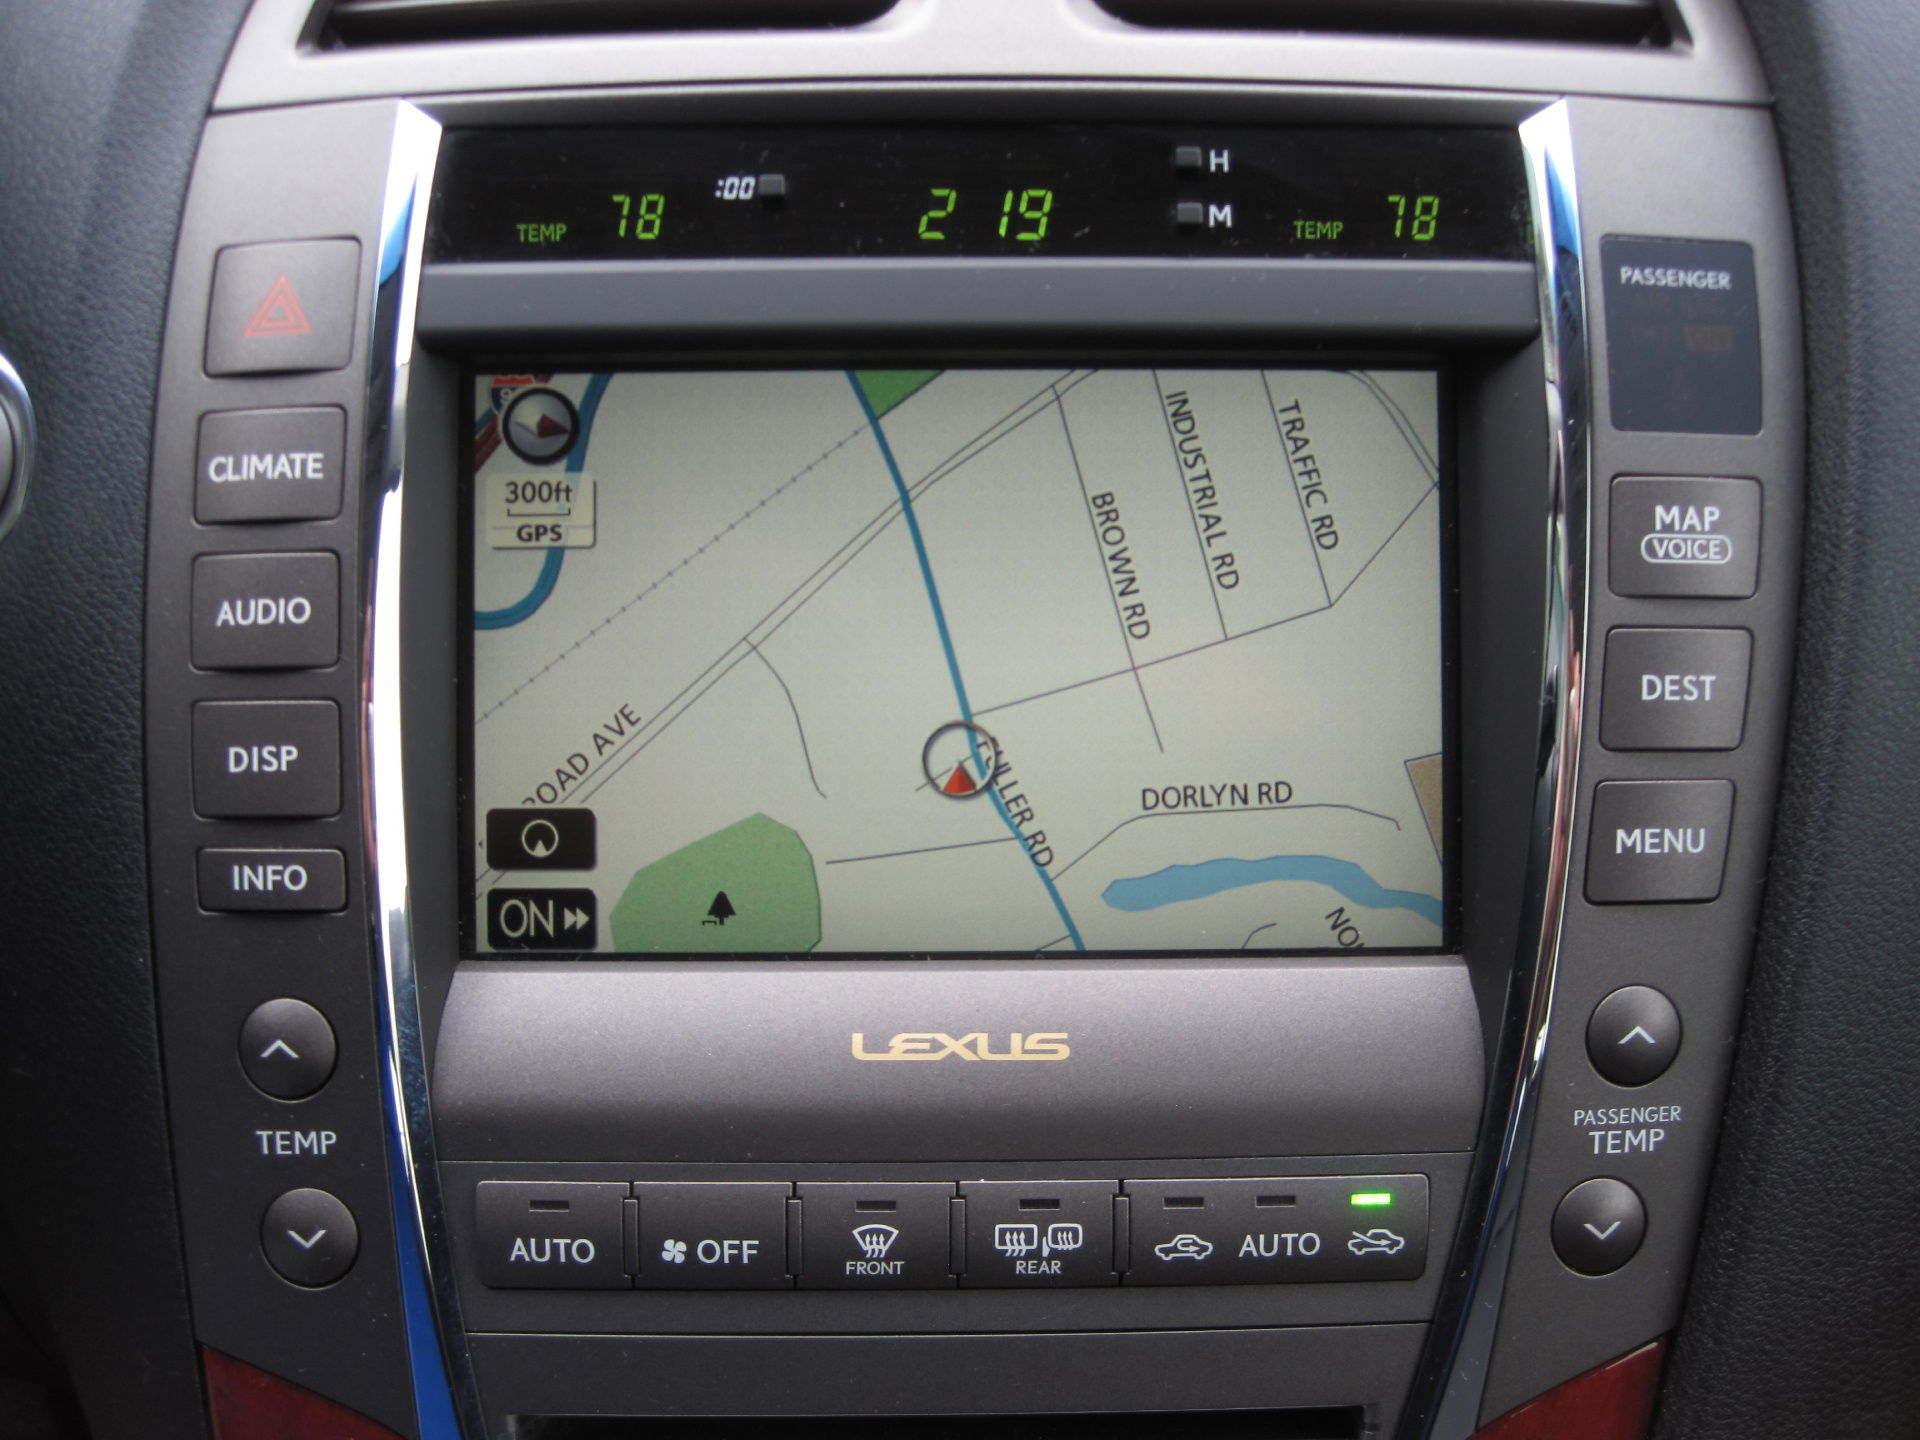 2008 Lexus ES 350 Has Voice-Activated Navigation System.